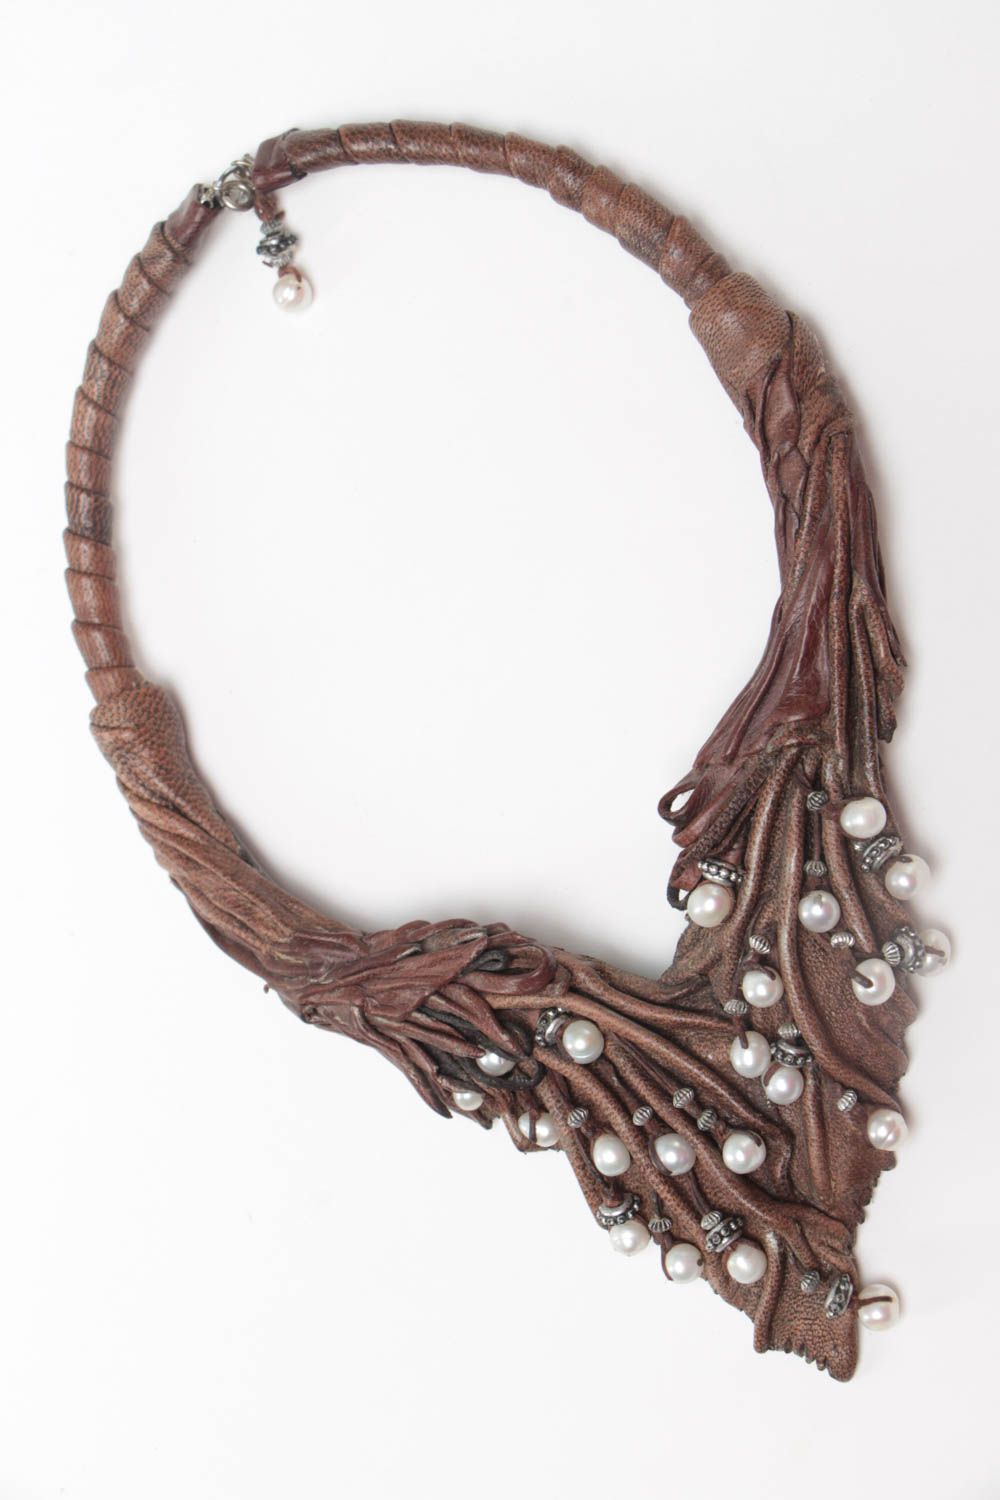 Коричневое ожерелье из кожи с жемчугом ручной работы объемное стильное фото 2